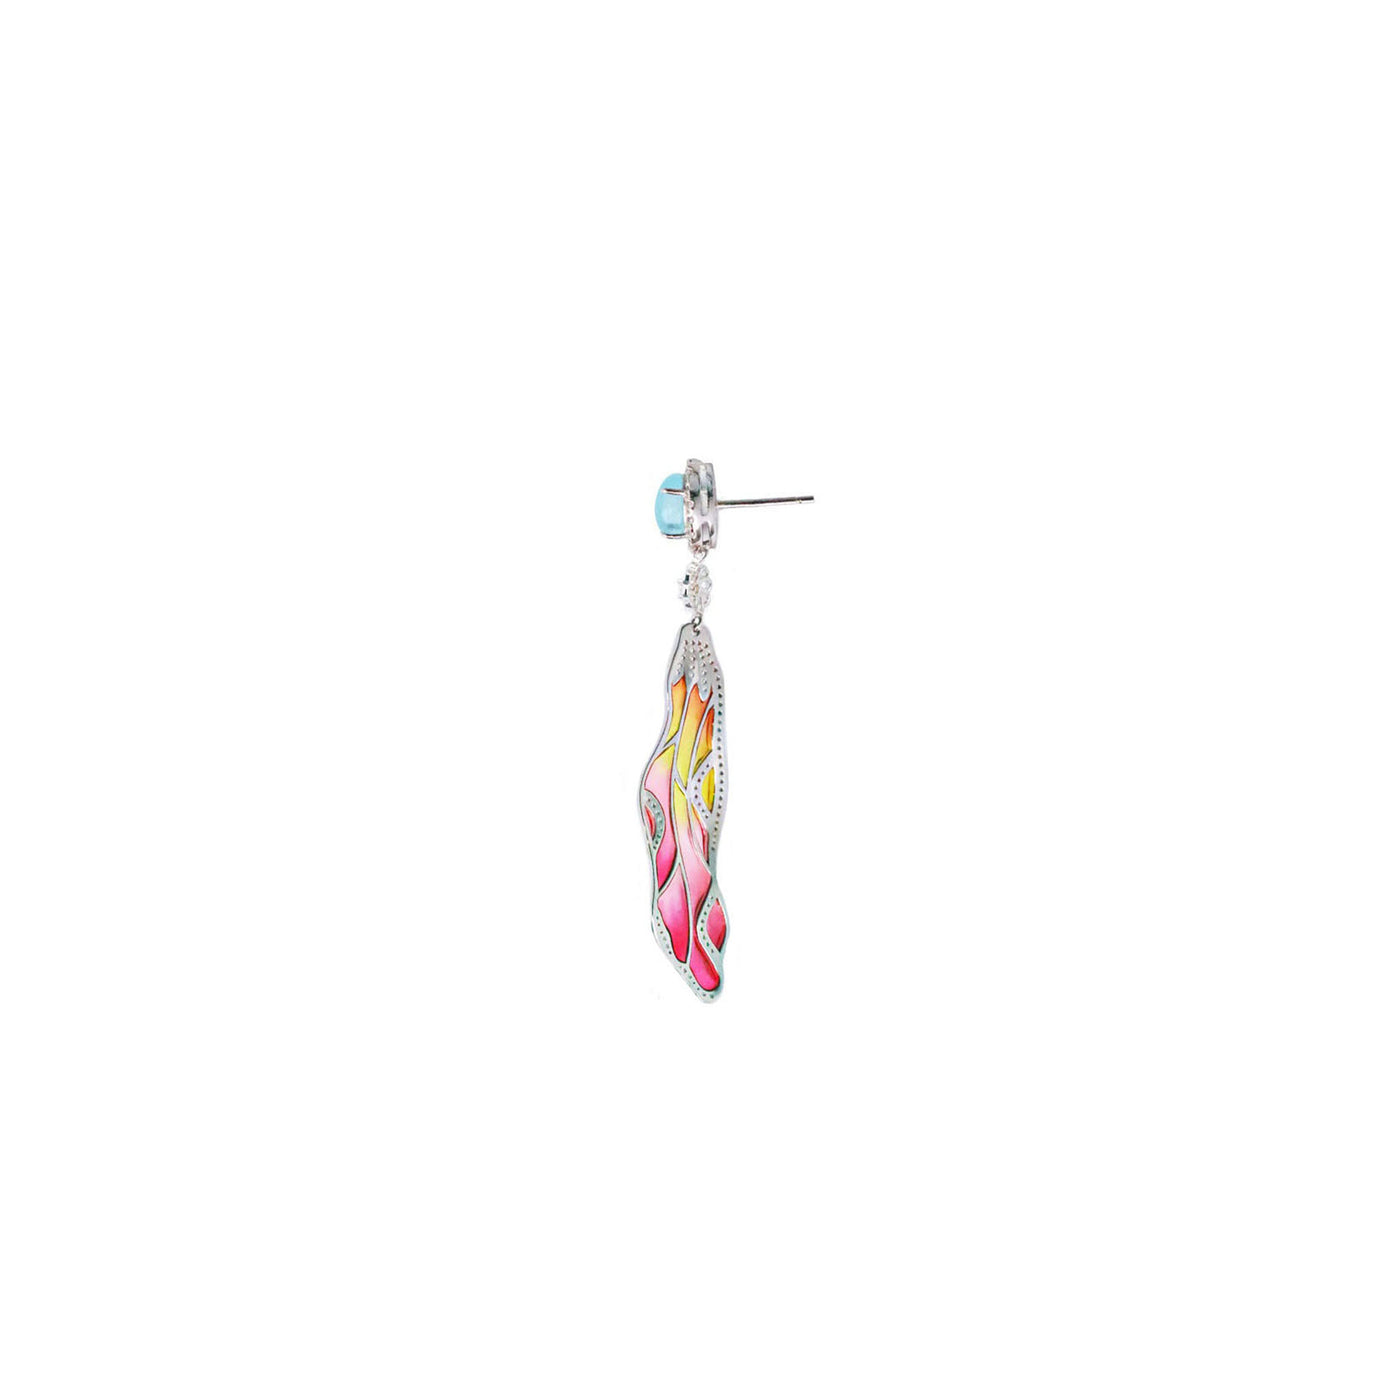 Firefly Enamel Earring - Pink | Angela Jewellery Australia